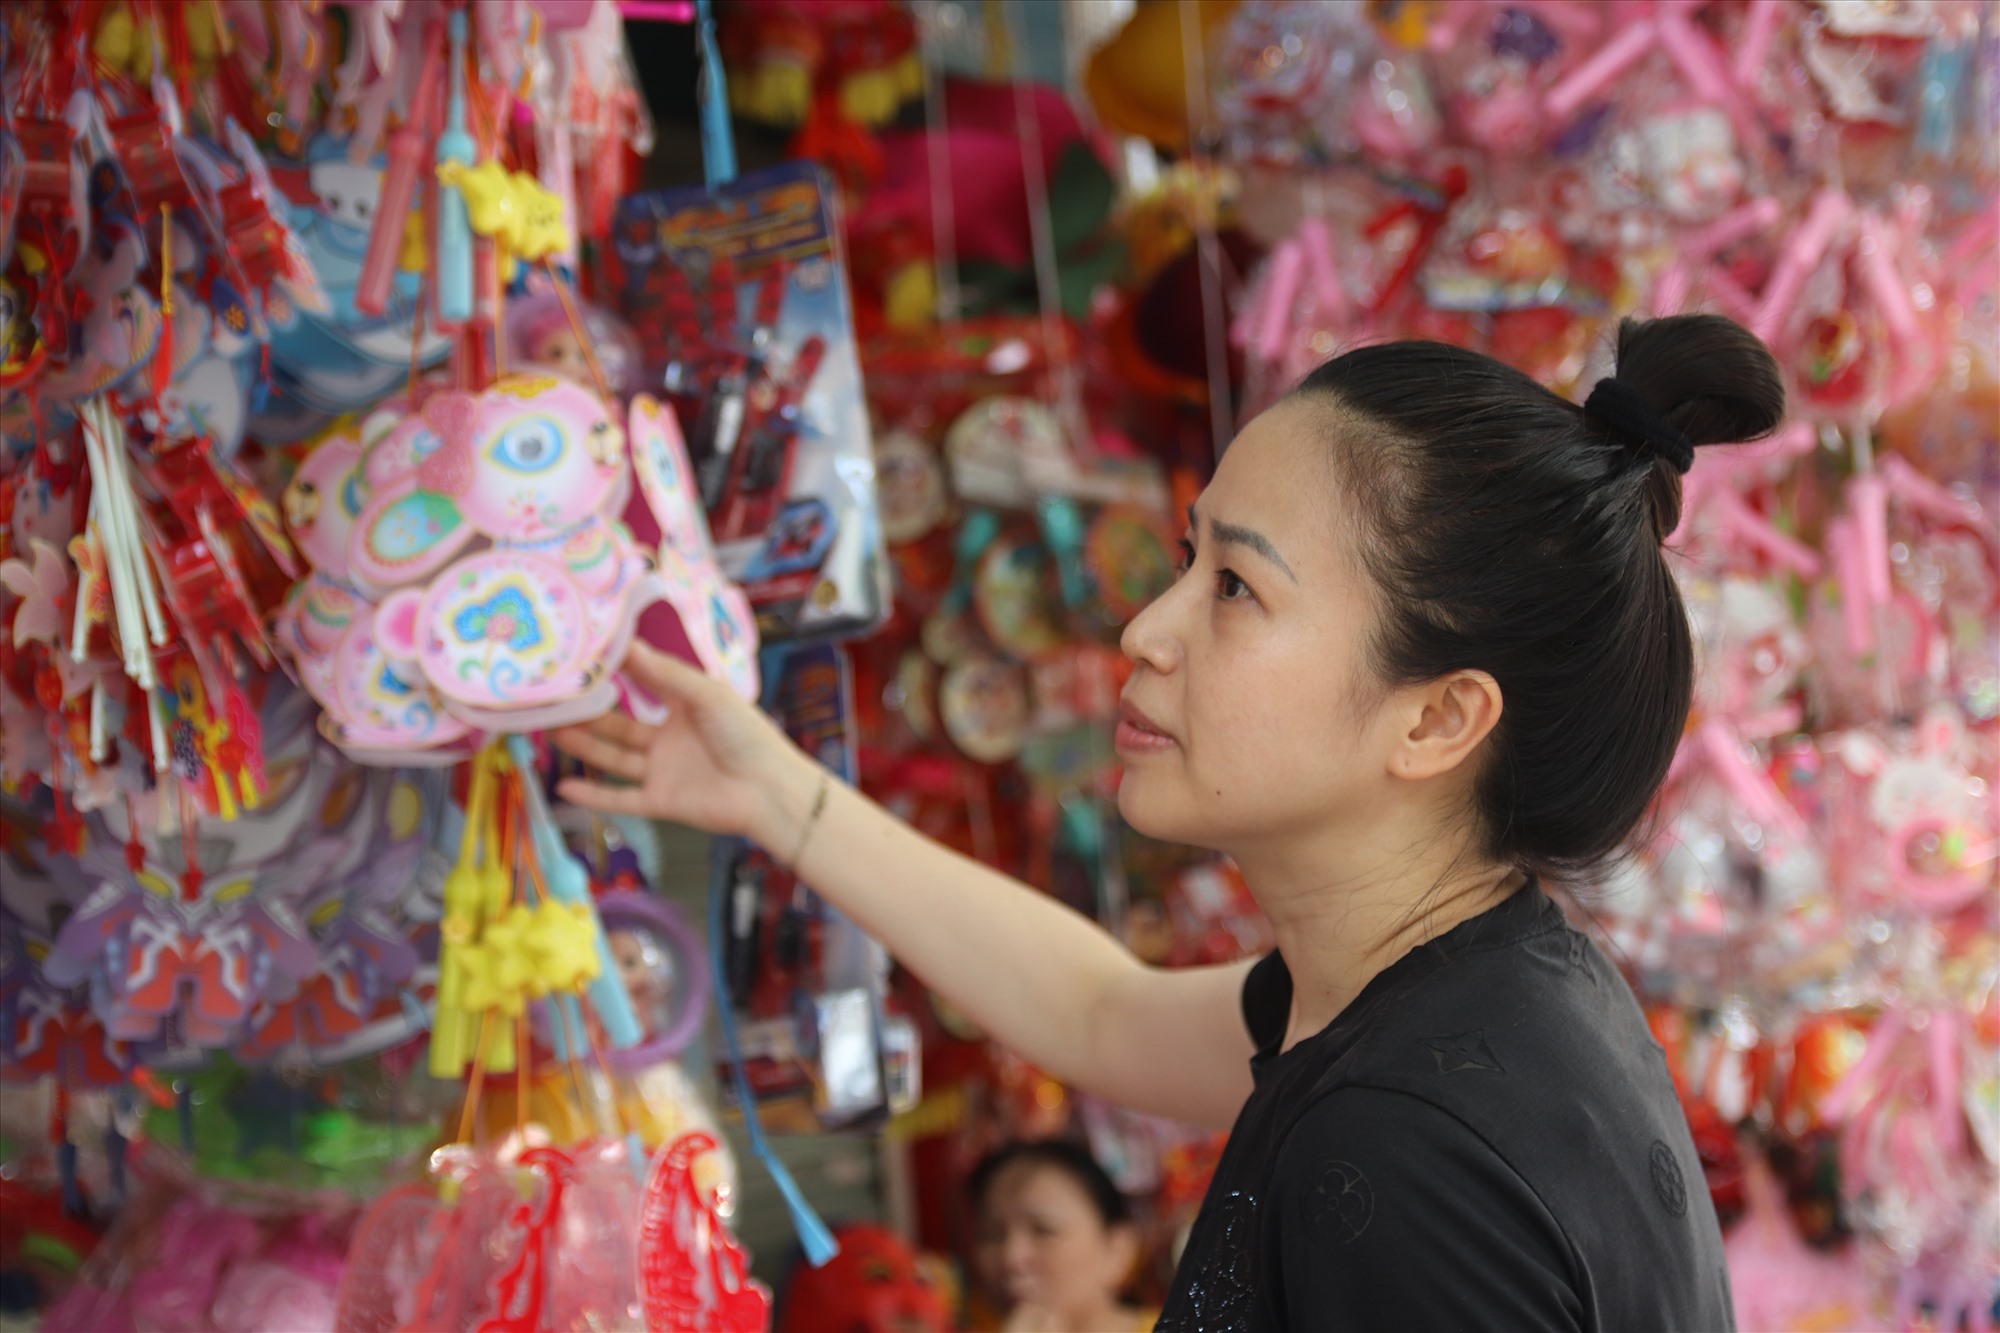 Theo chia sẻ của chị Hà Trang- chủ cửa hàng kinh doanh tại phố Hàng Mã, các sản phẩm đồ chơi truyền thống được sản xuất tại Việt Nam chiếm khoảng 60%, 40% còn lại là hàng nhập ngoại từ năm trước. ''Năm nay giá cả không có nhiều biến động so với năm trước. Vì lo kinh tế khó khăn, người dân thắt chặt chi tiêu nên chúng tôi chỉ dám nhập hàng cầm chừng'', chị Hà Trang nói.